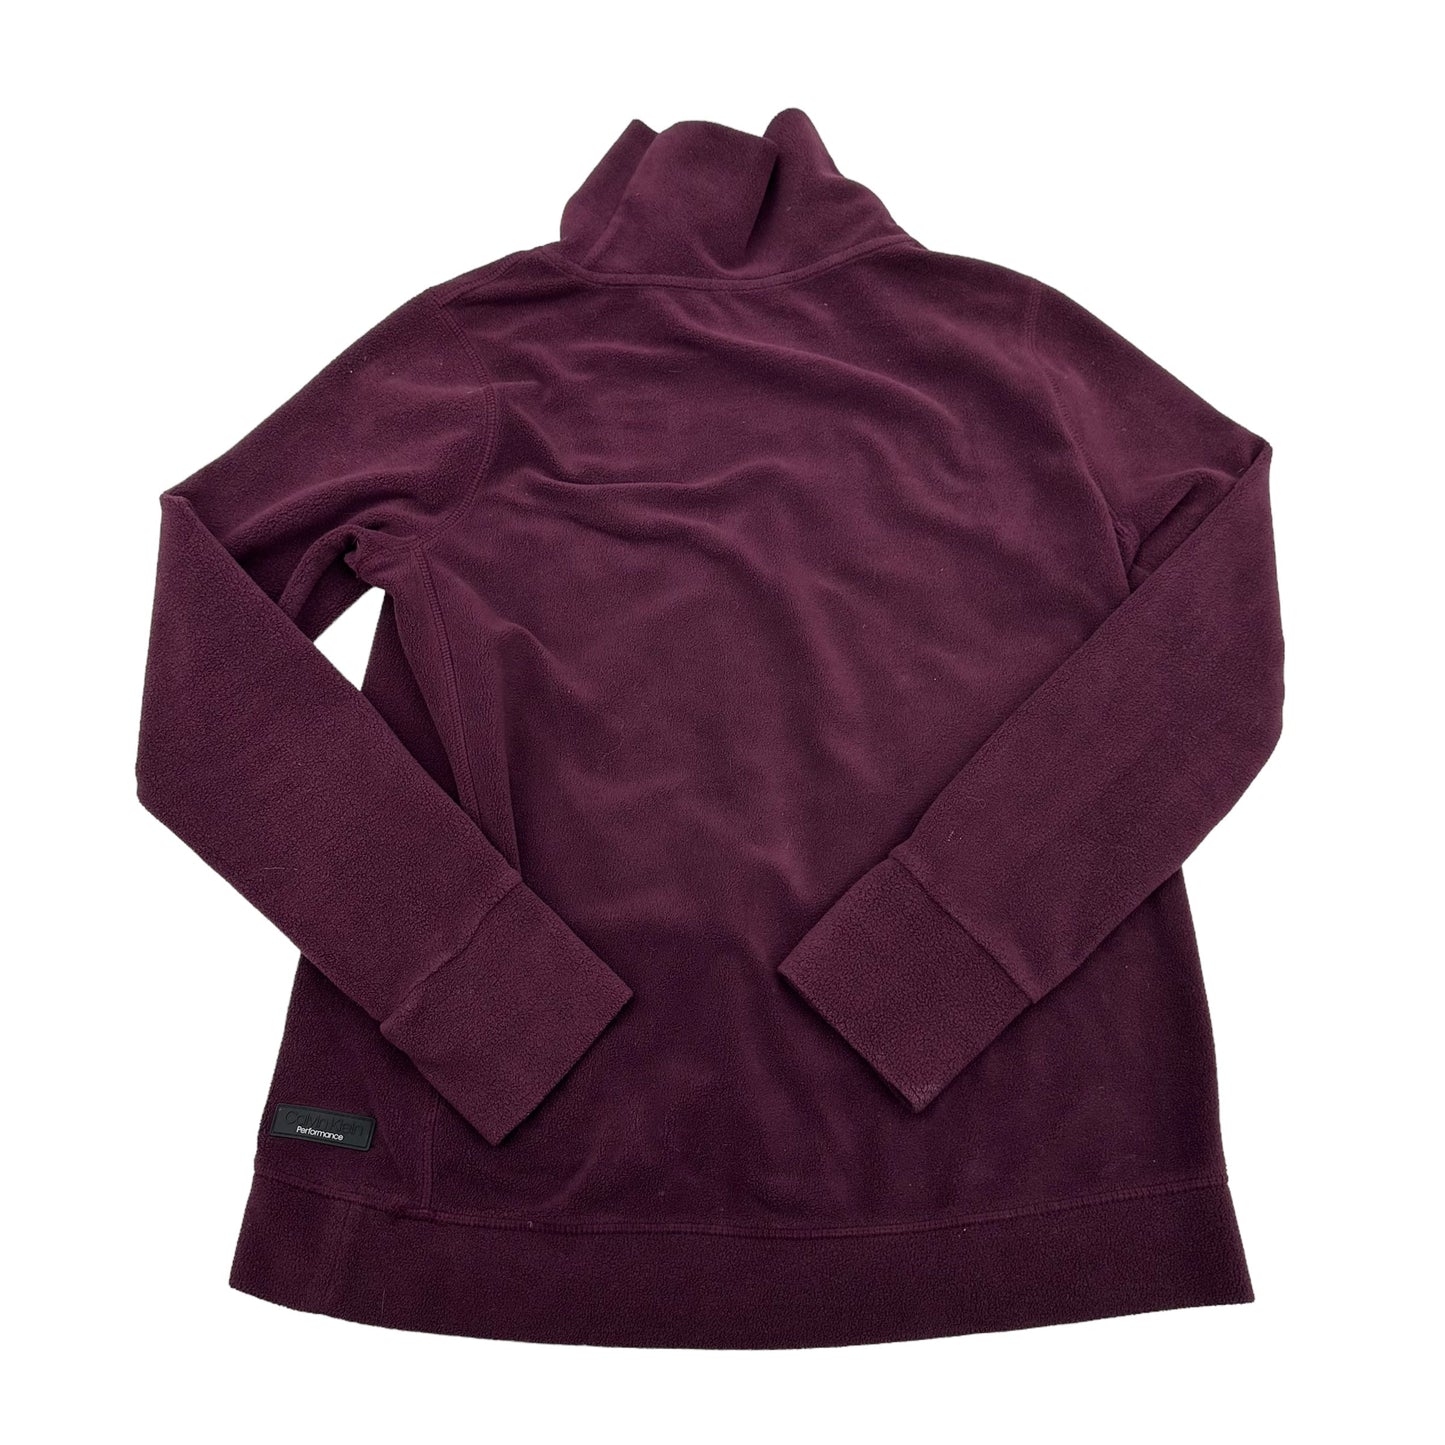 Sweatshirt Crewneck By Calvin Klein  Size: S